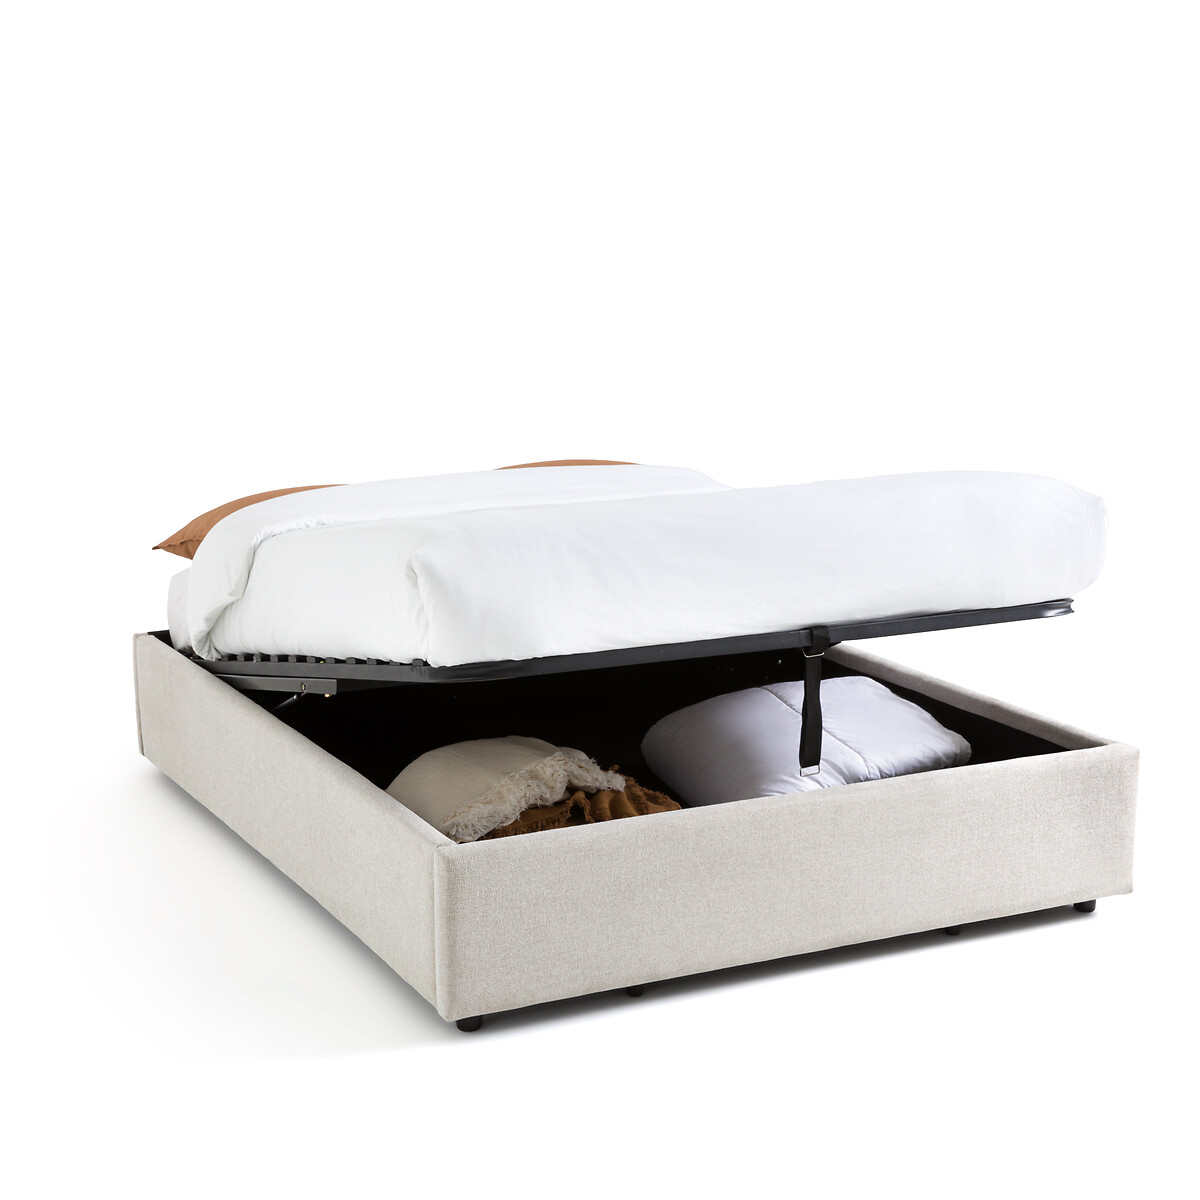 Кровать С реечным дном и ящиком внутри Papilla 160 x 200 см бежевый LaRedoute, размер 160 x 200 см - фото 1